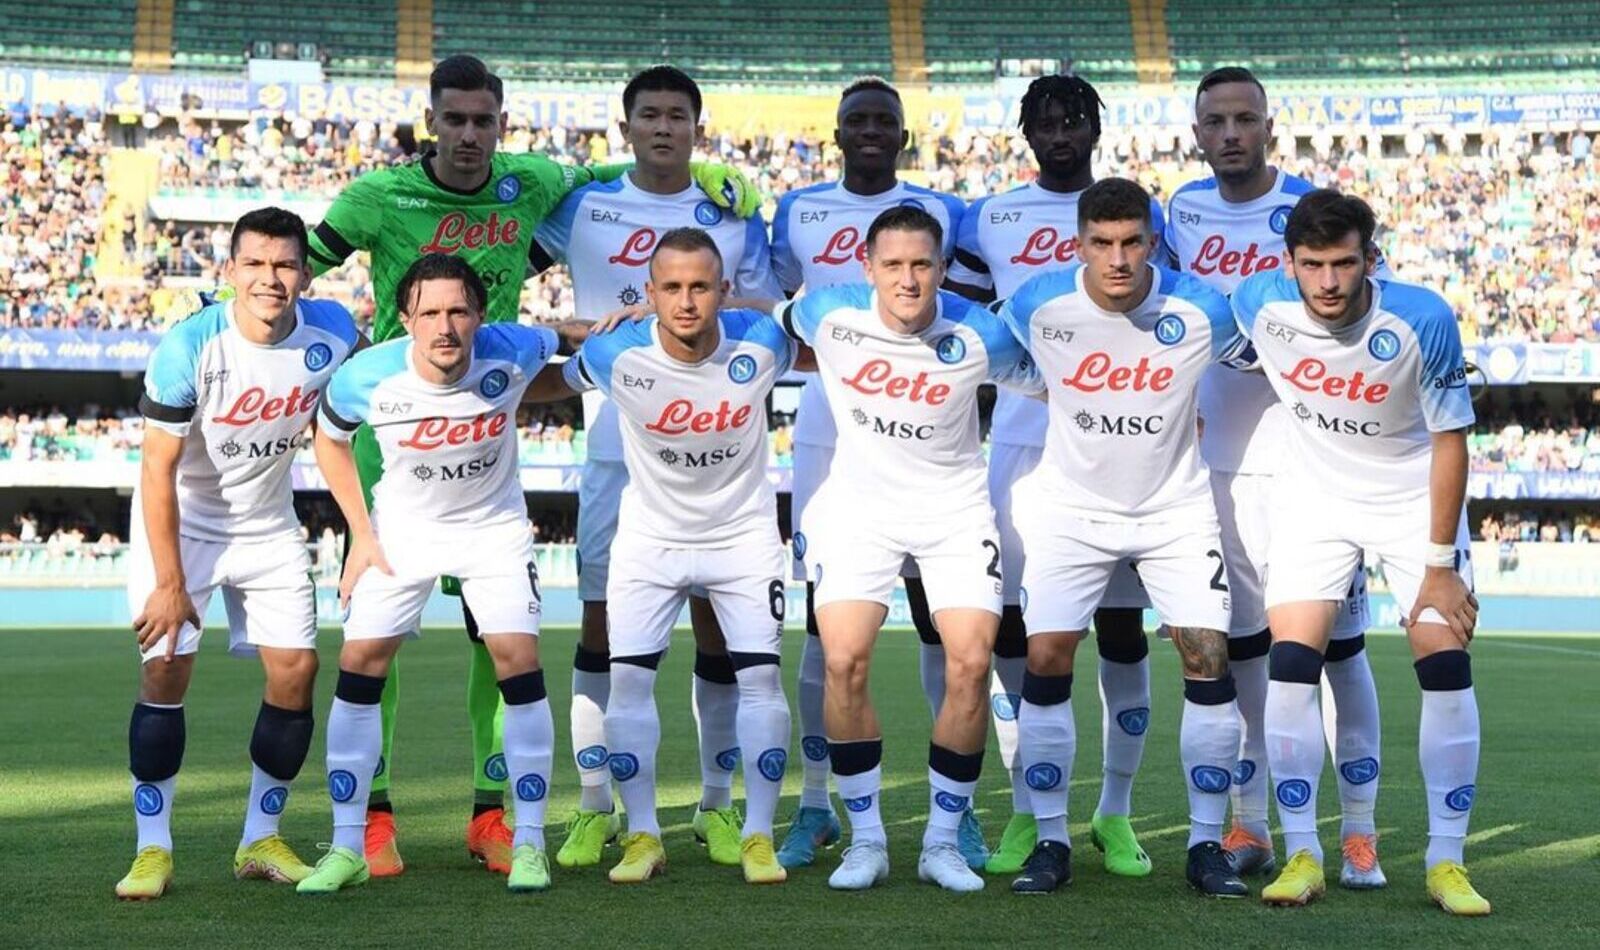 L'équipe de Naples pose pour la photo avant le match contre Hellas Verona